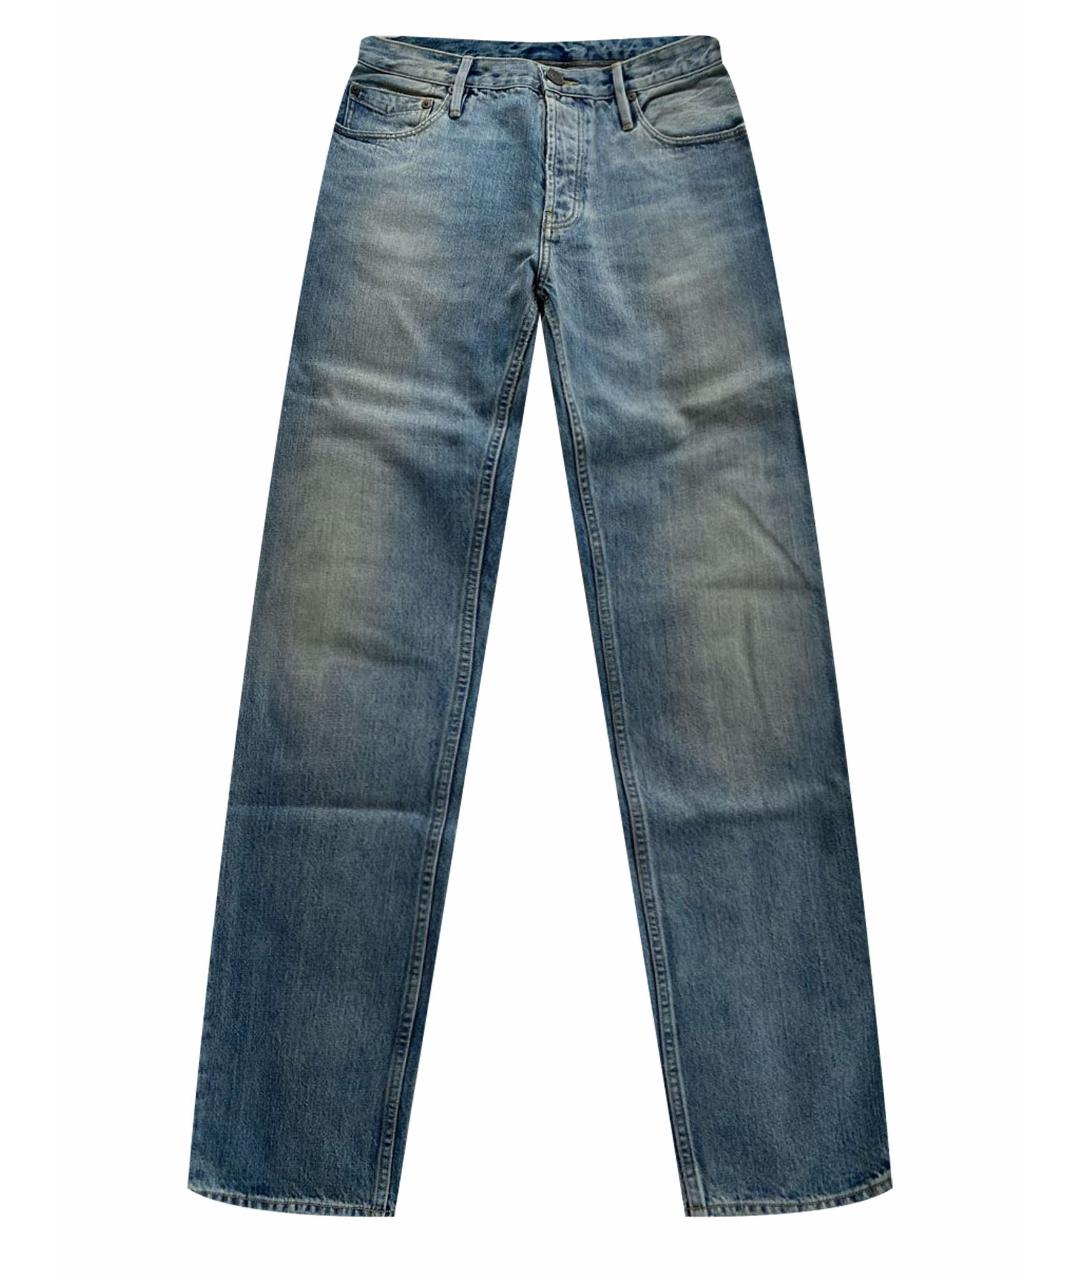 BURBERRY BRIT Хлопковые джинсы скинни, фото 1